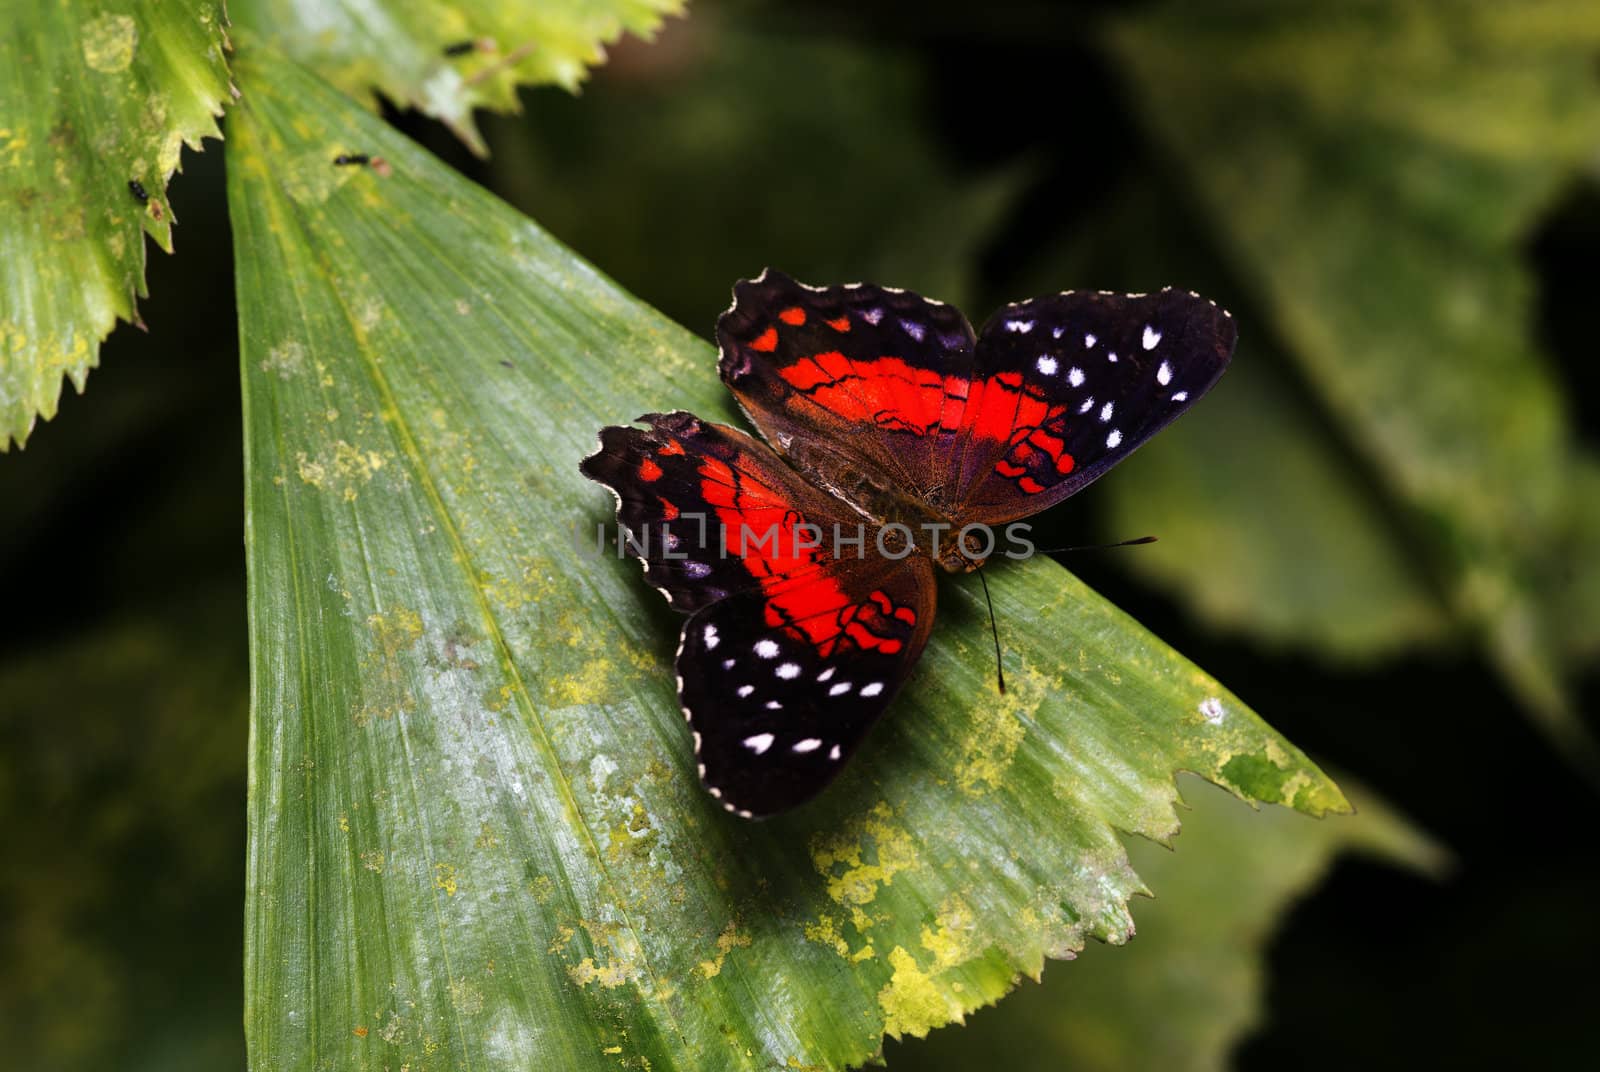 Scarlet Peacock or Anartia amathea butterfly in dutch butterfly garden